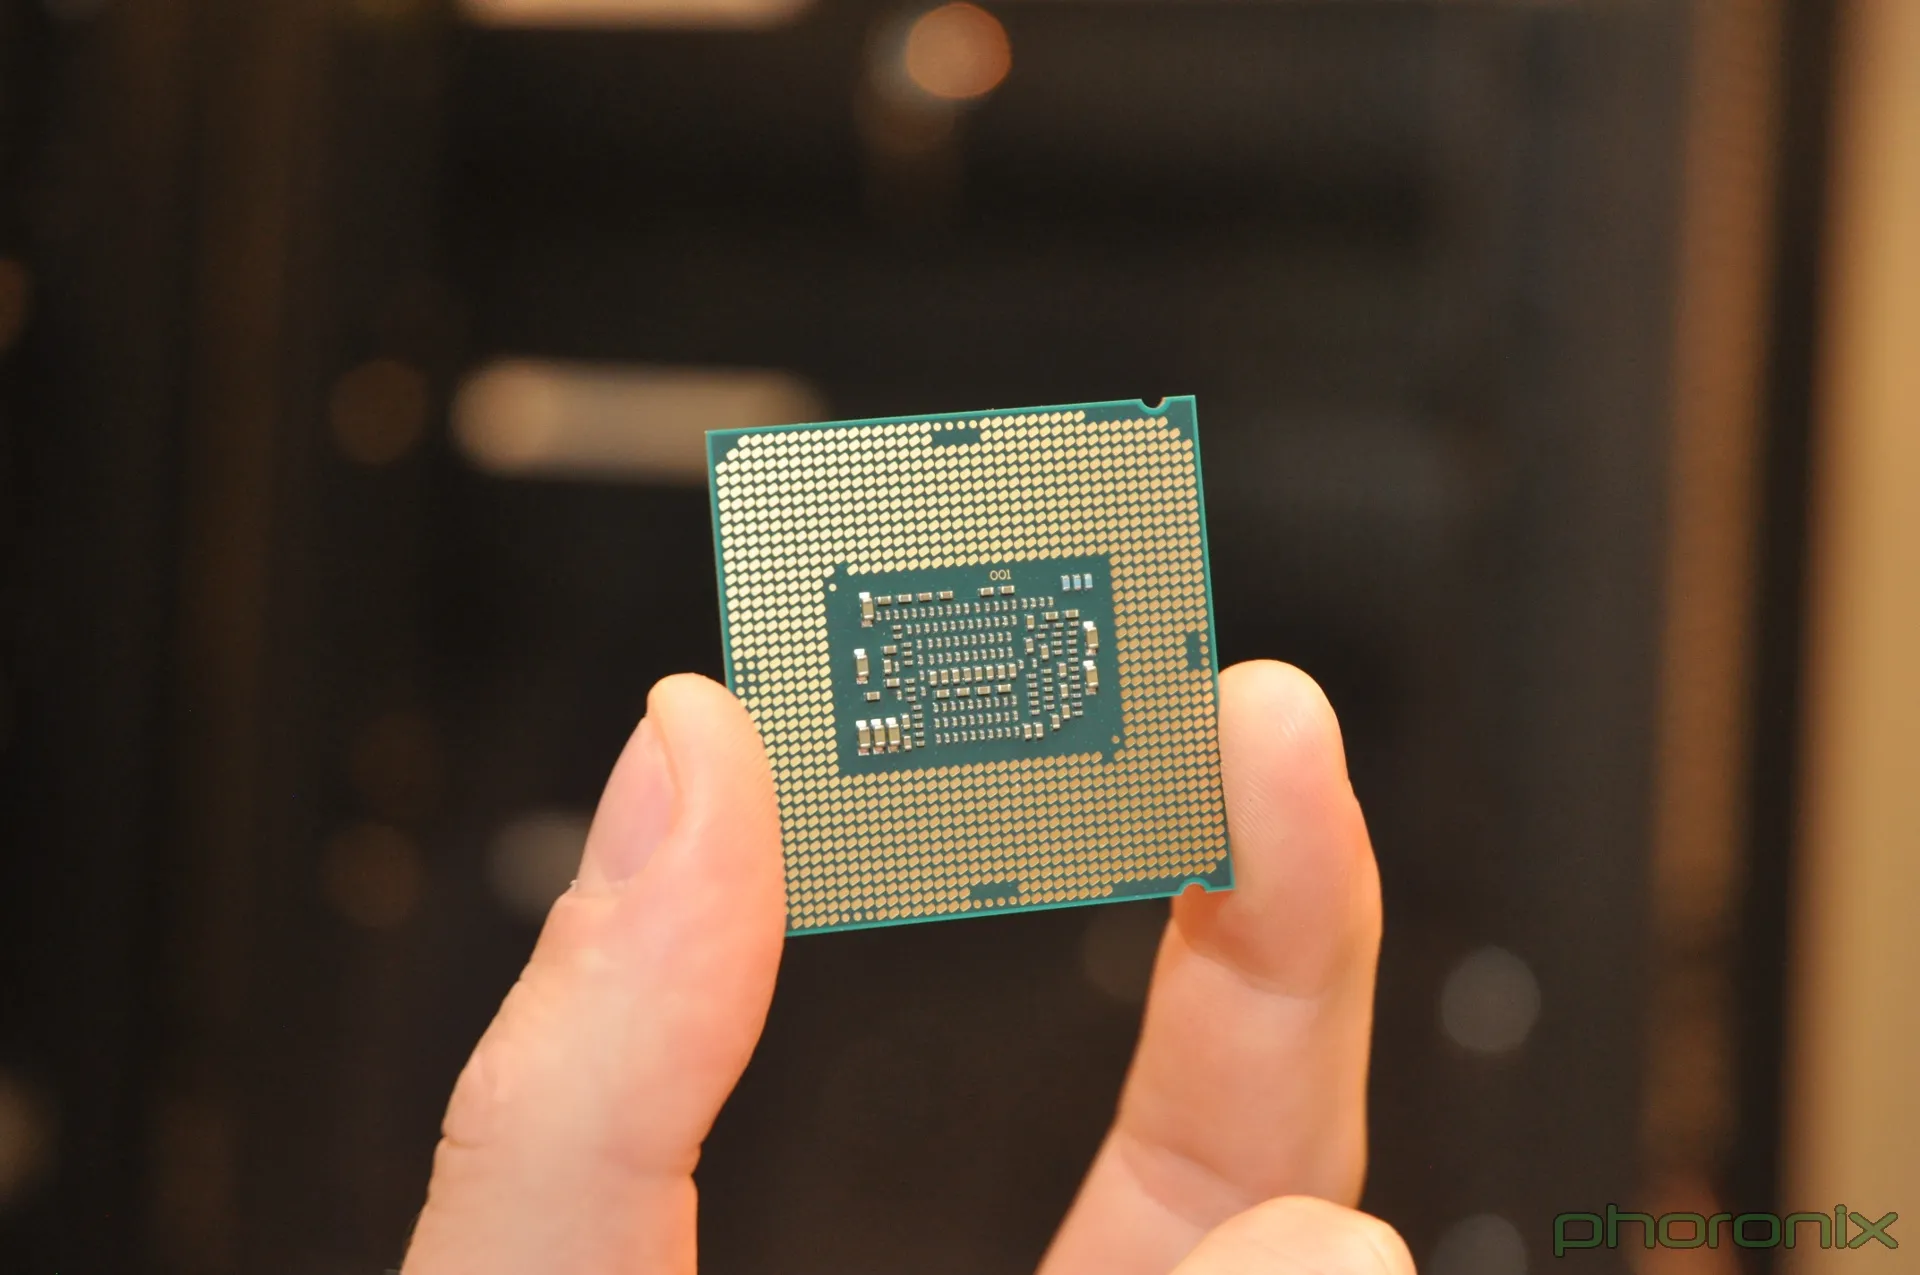 Intel Core i3-8100 3.6 GHz Quad-Core LGA 1151 BX80684I38100 B&H